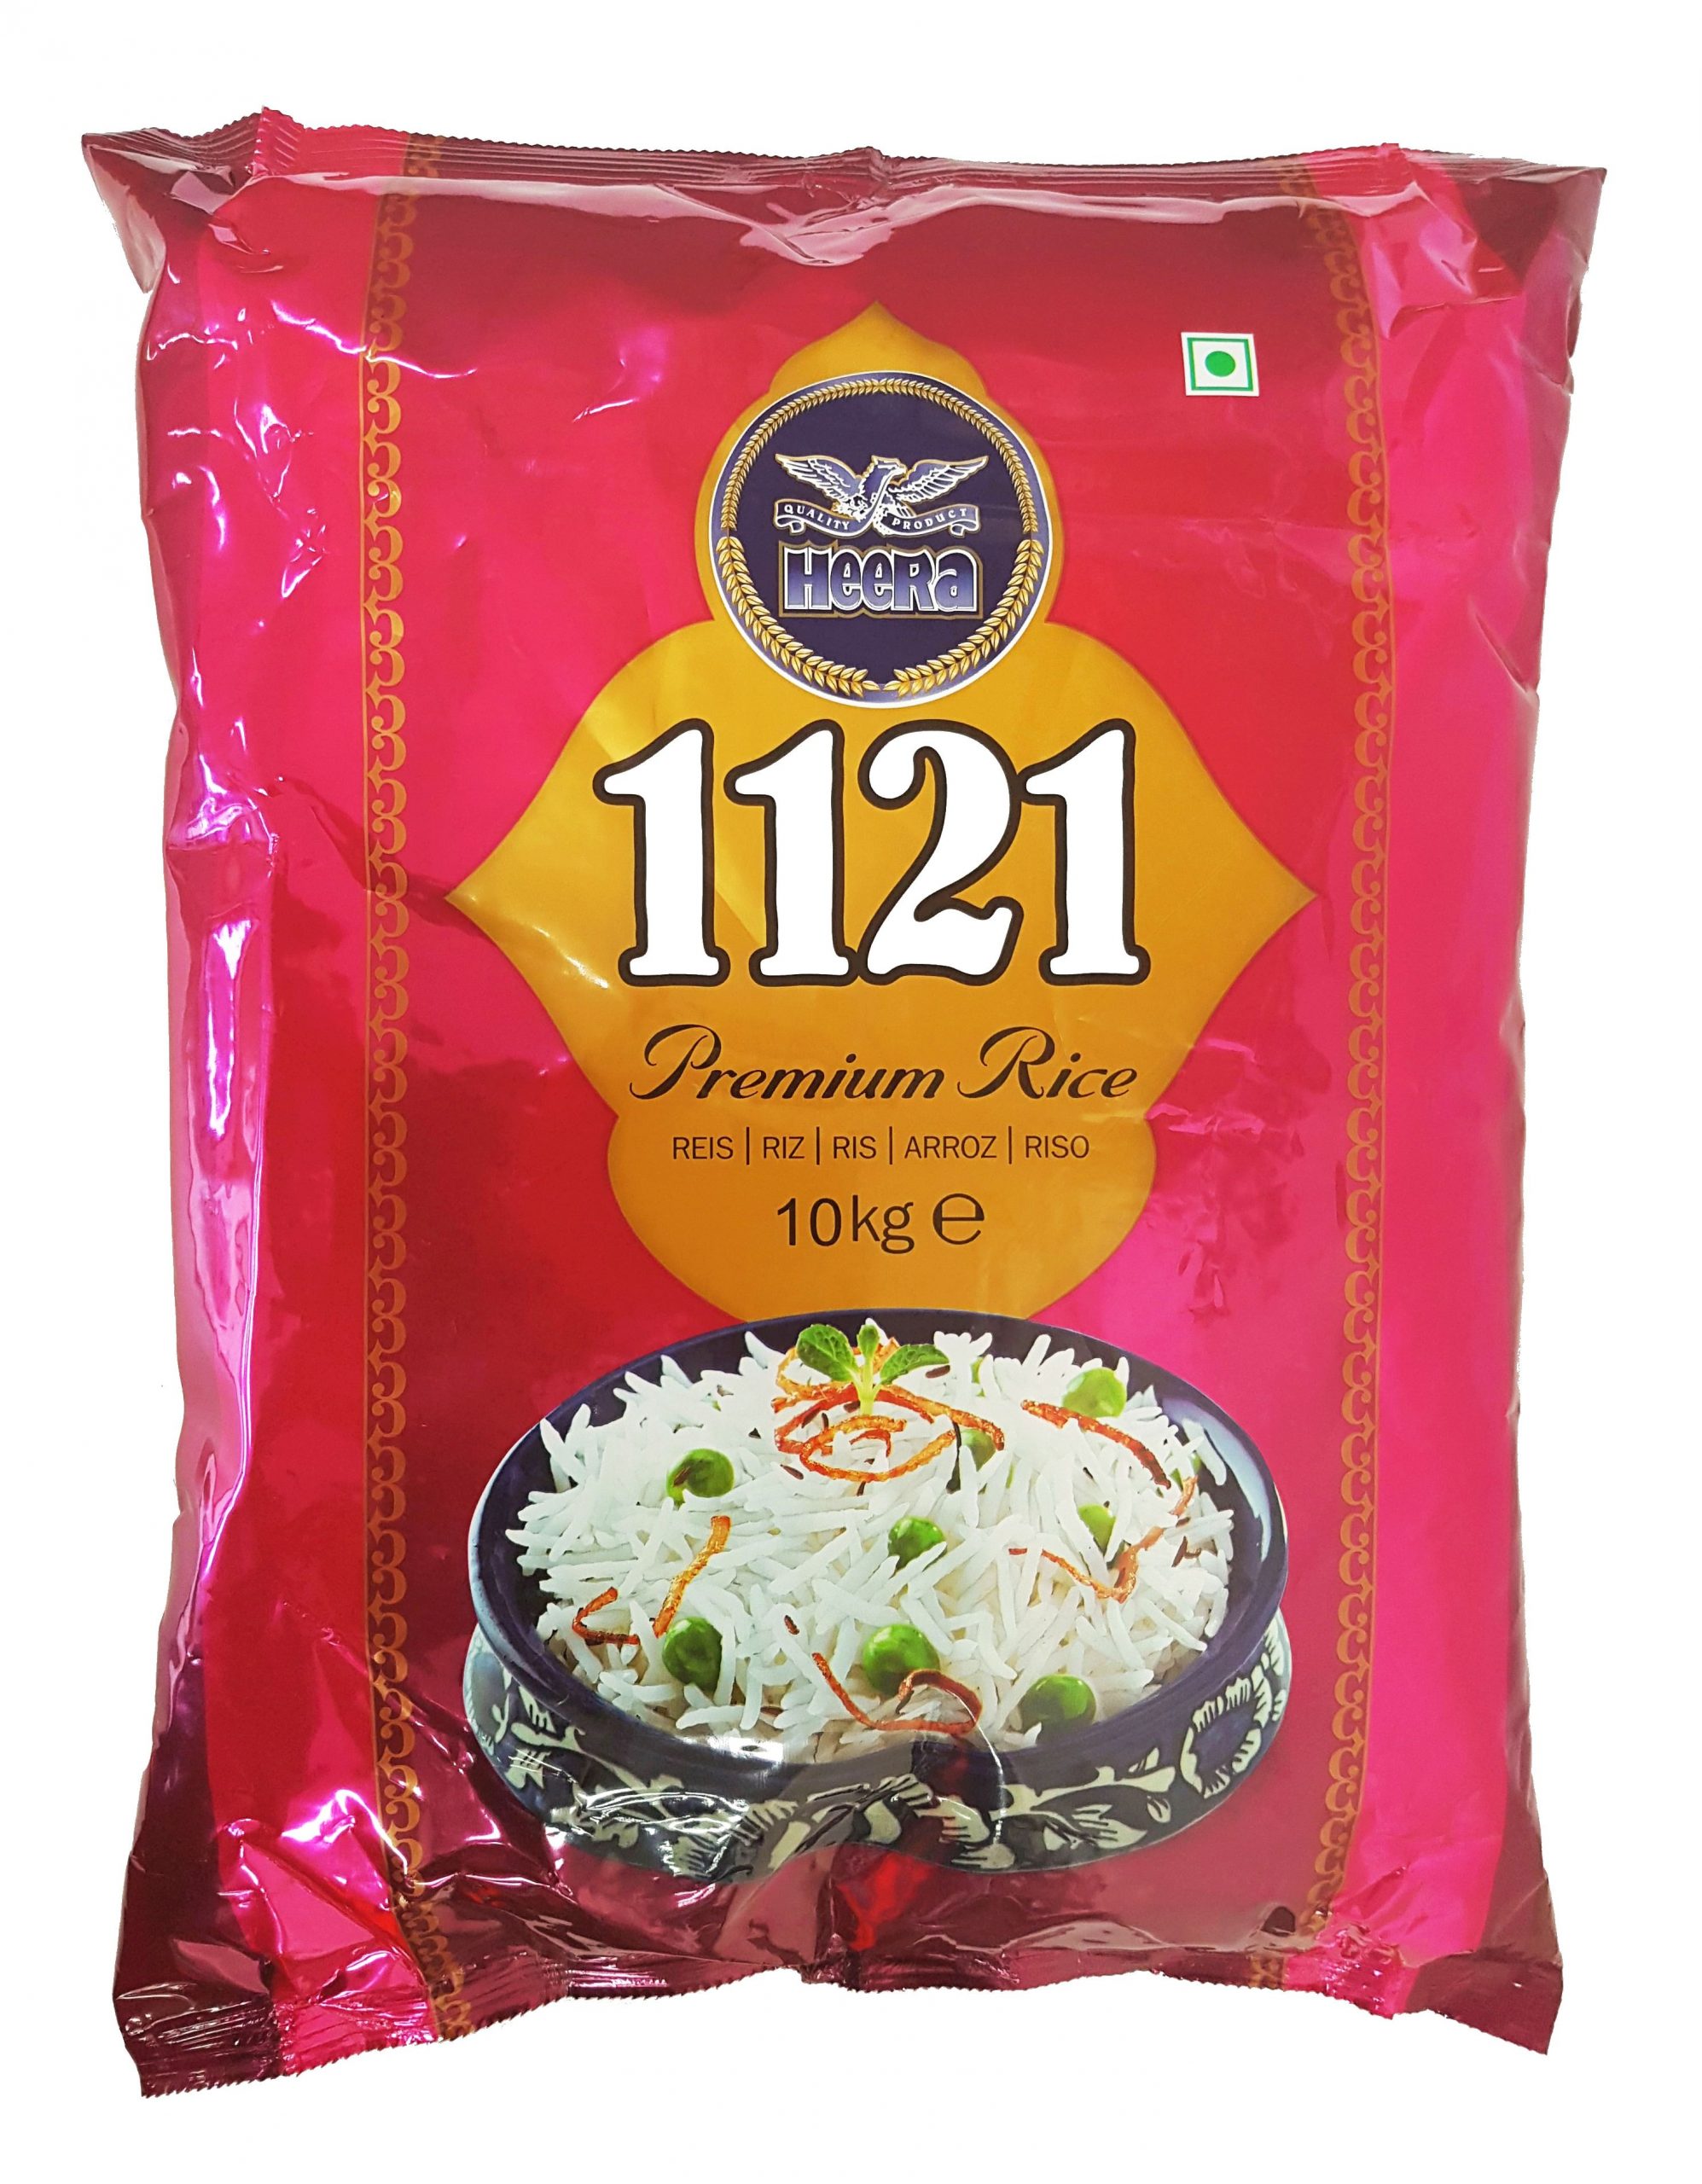 heera-1121-premium-rice-10kg-rashan-pani